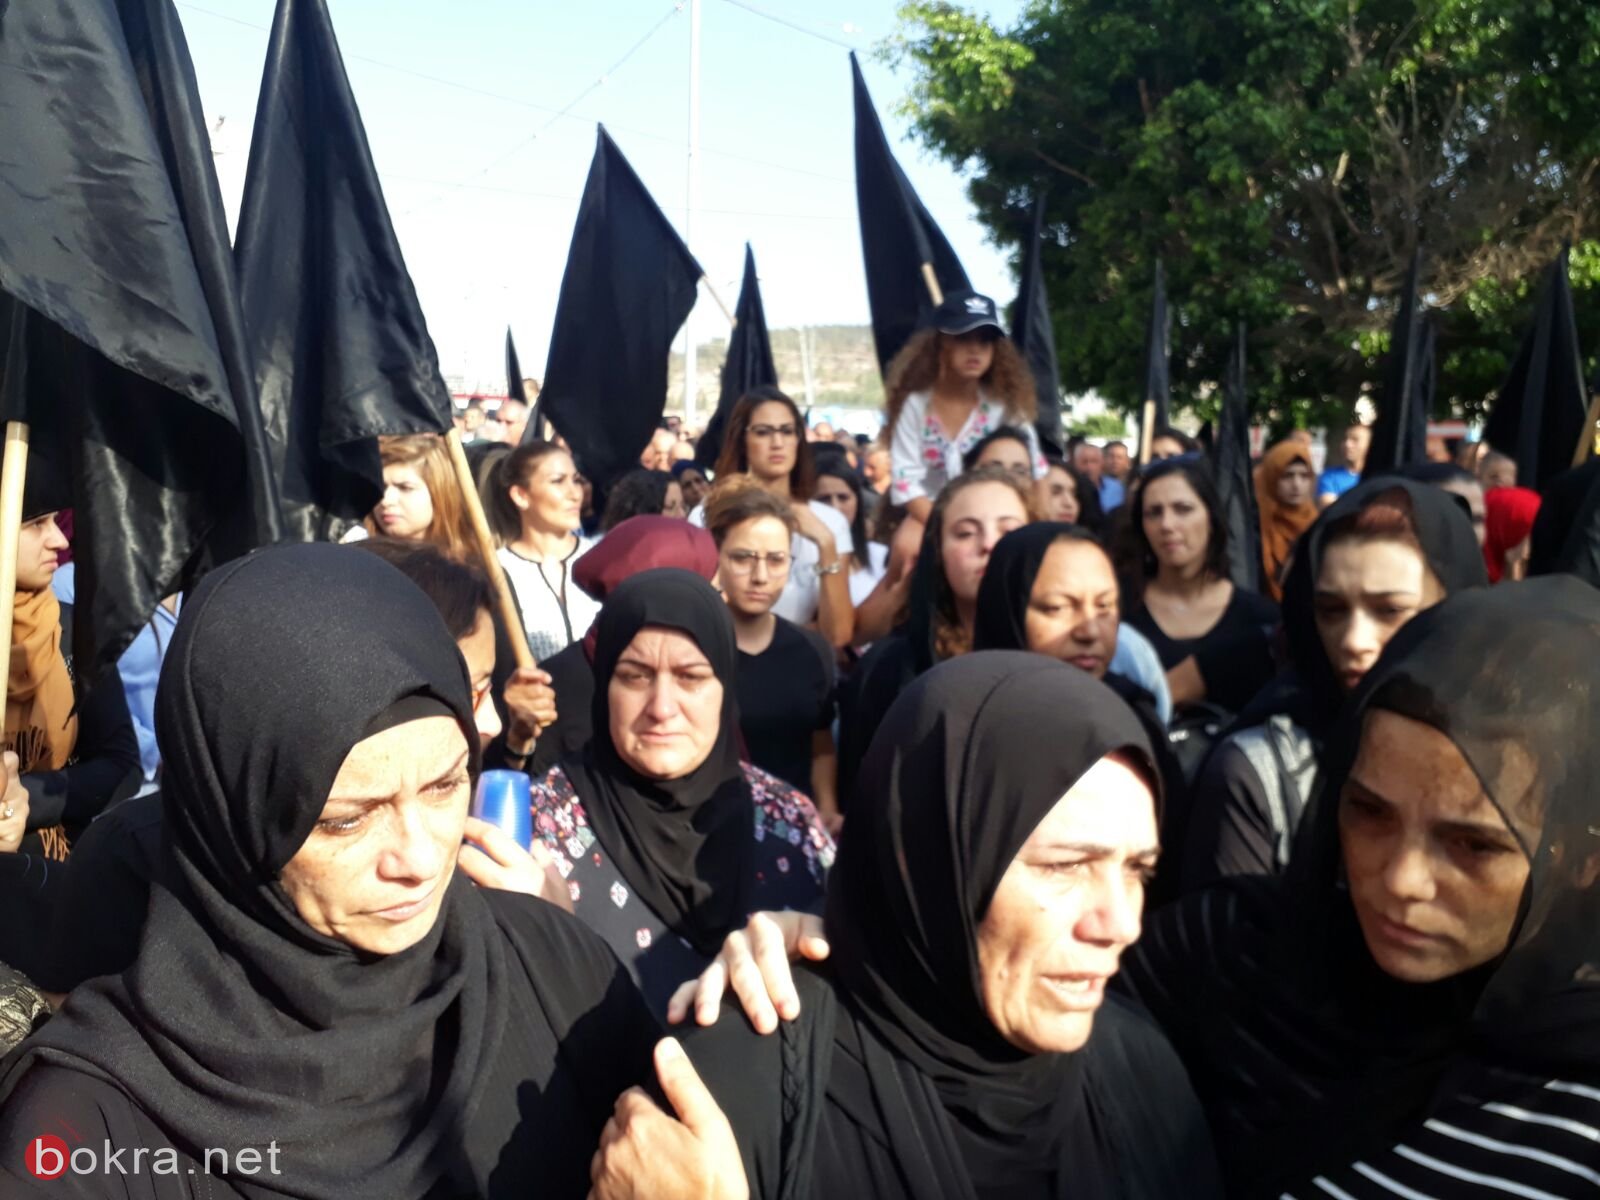 صراخ نساء ودعاء ام ثاكل في مظاهرة مجد الكروم امس ضد العنف-3